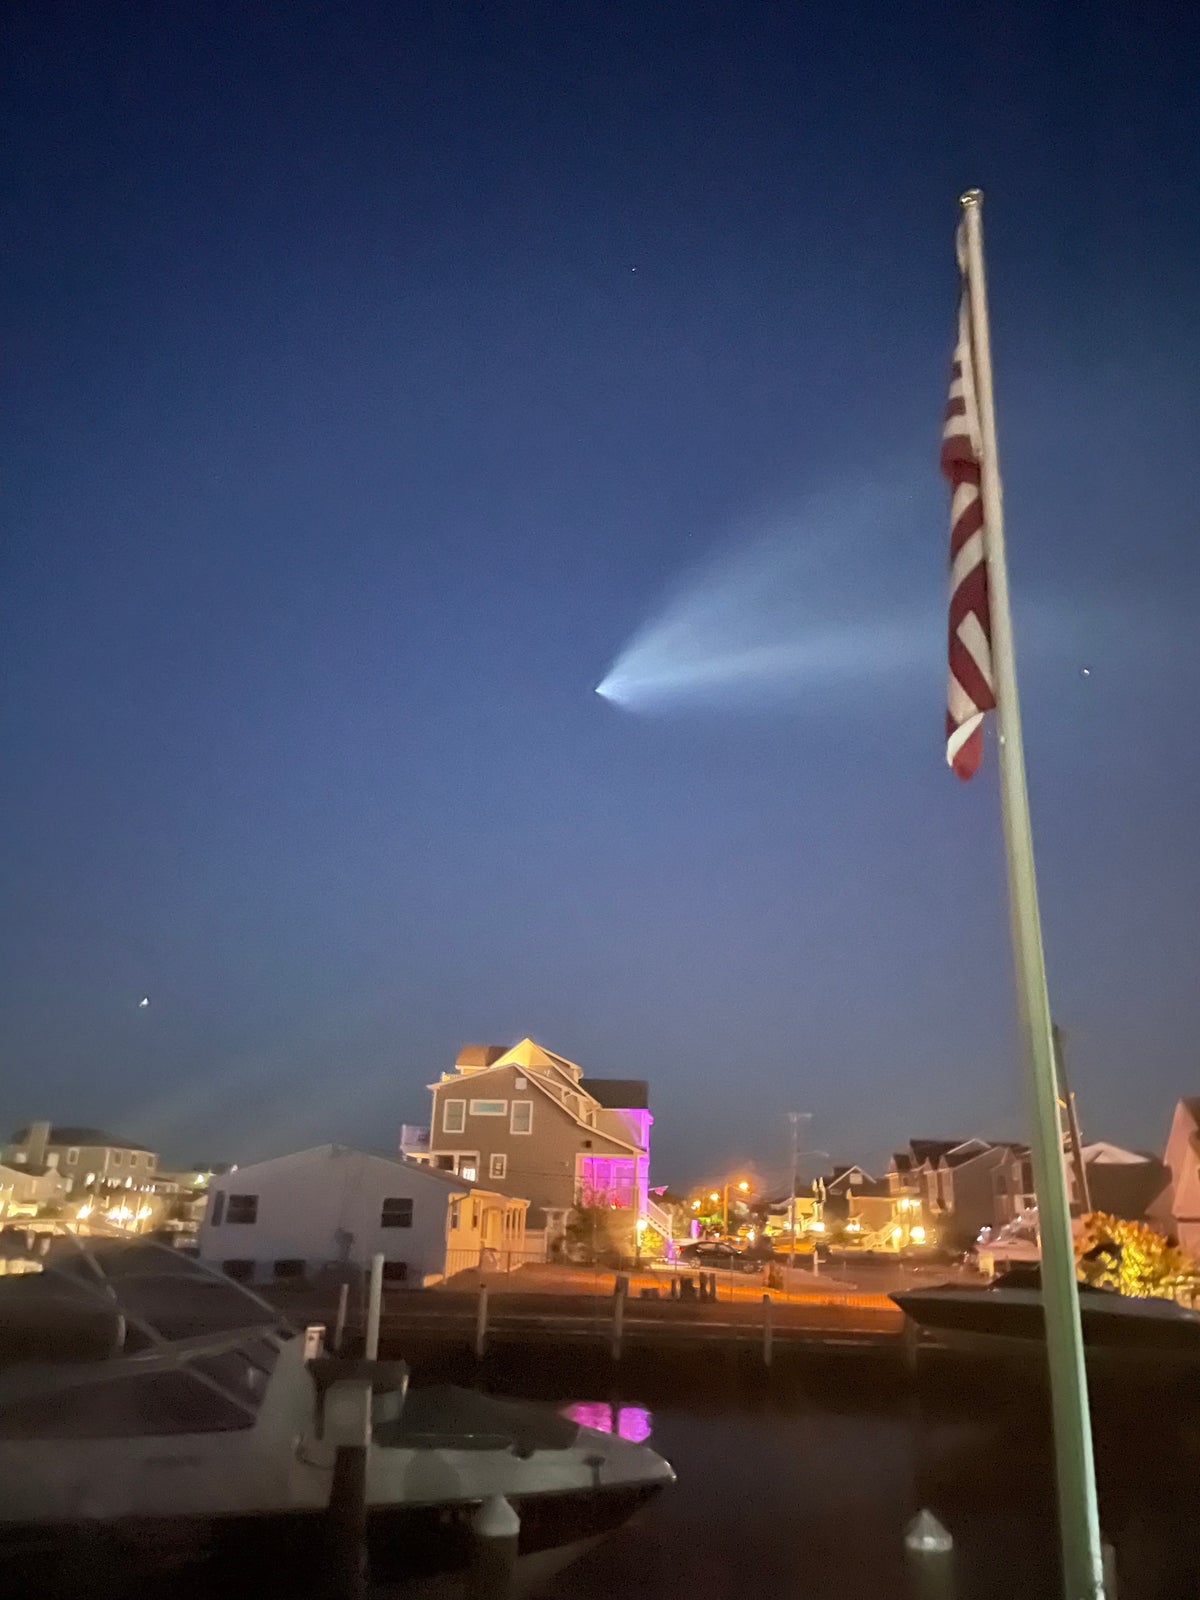 トムズ川を渡る SpaceX Falcon 9 ロケットの蒸気の跡。  News 12 の視聴者ペア、ニュージャージーの視聴者である Michelle Arusha の厚意による画像。